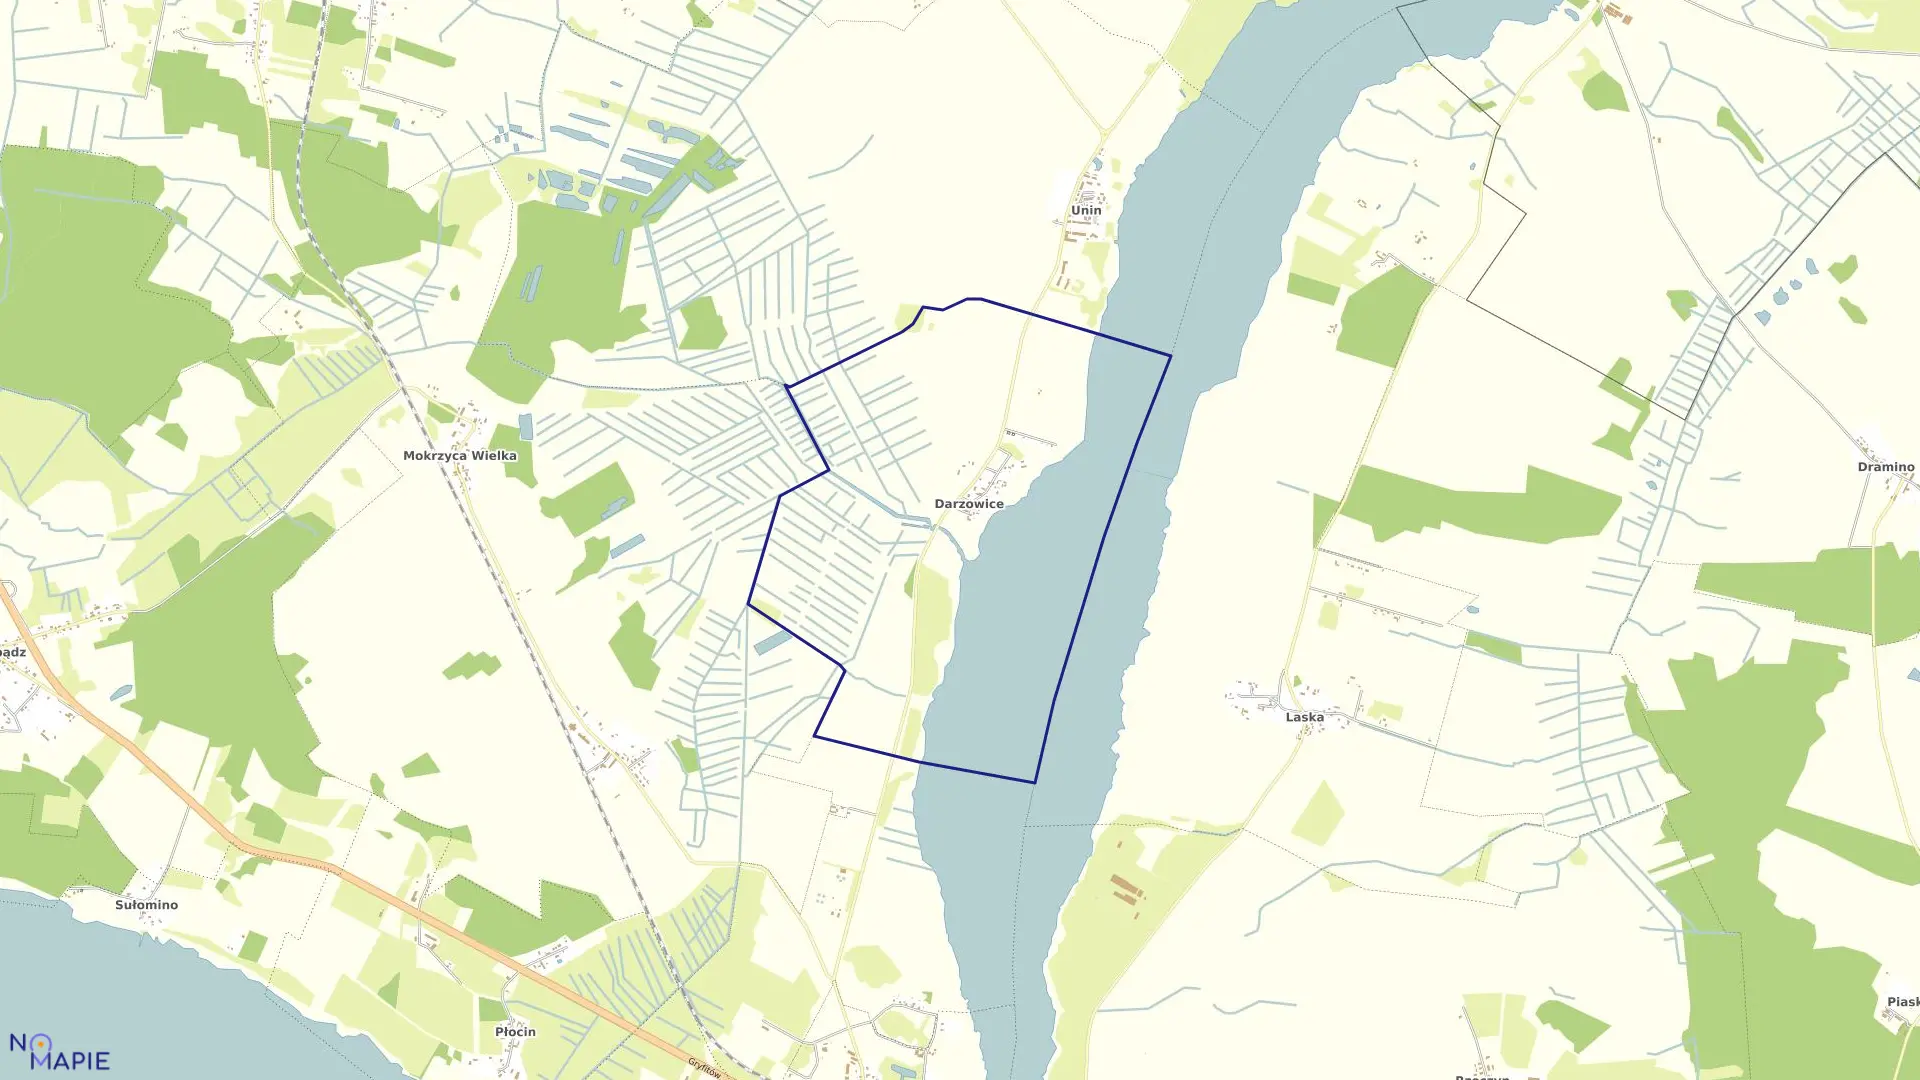 Mapa obrębu Darzowice w gminie Wolin